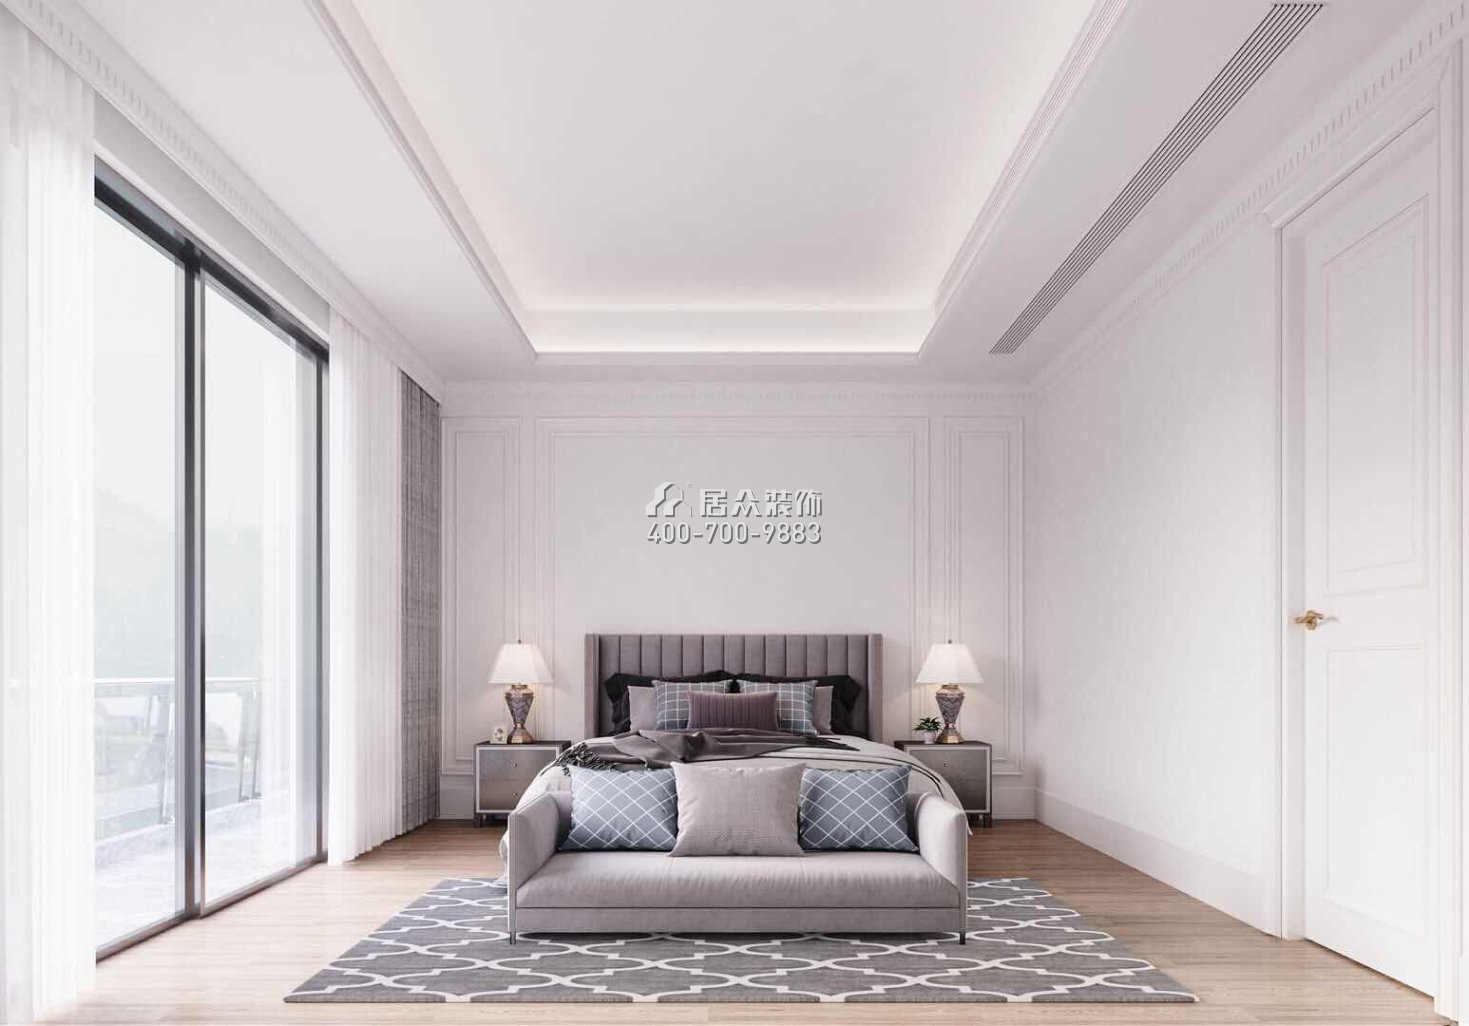 九洲保利天河320平方米現代簡約風格別墅戶型臥室裝修效果圖